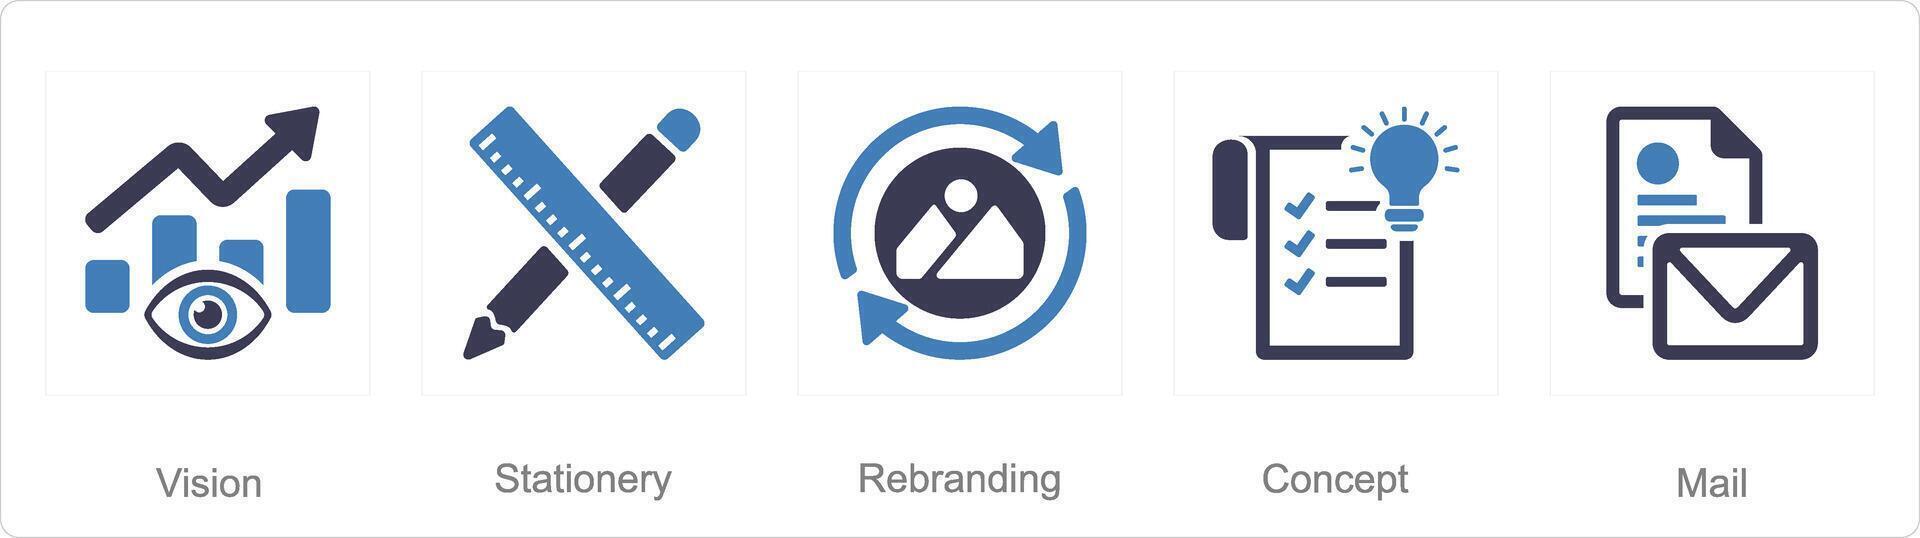 uma conjunto do 5 branding ícones Como visão, papelaria, Reformulação vetor